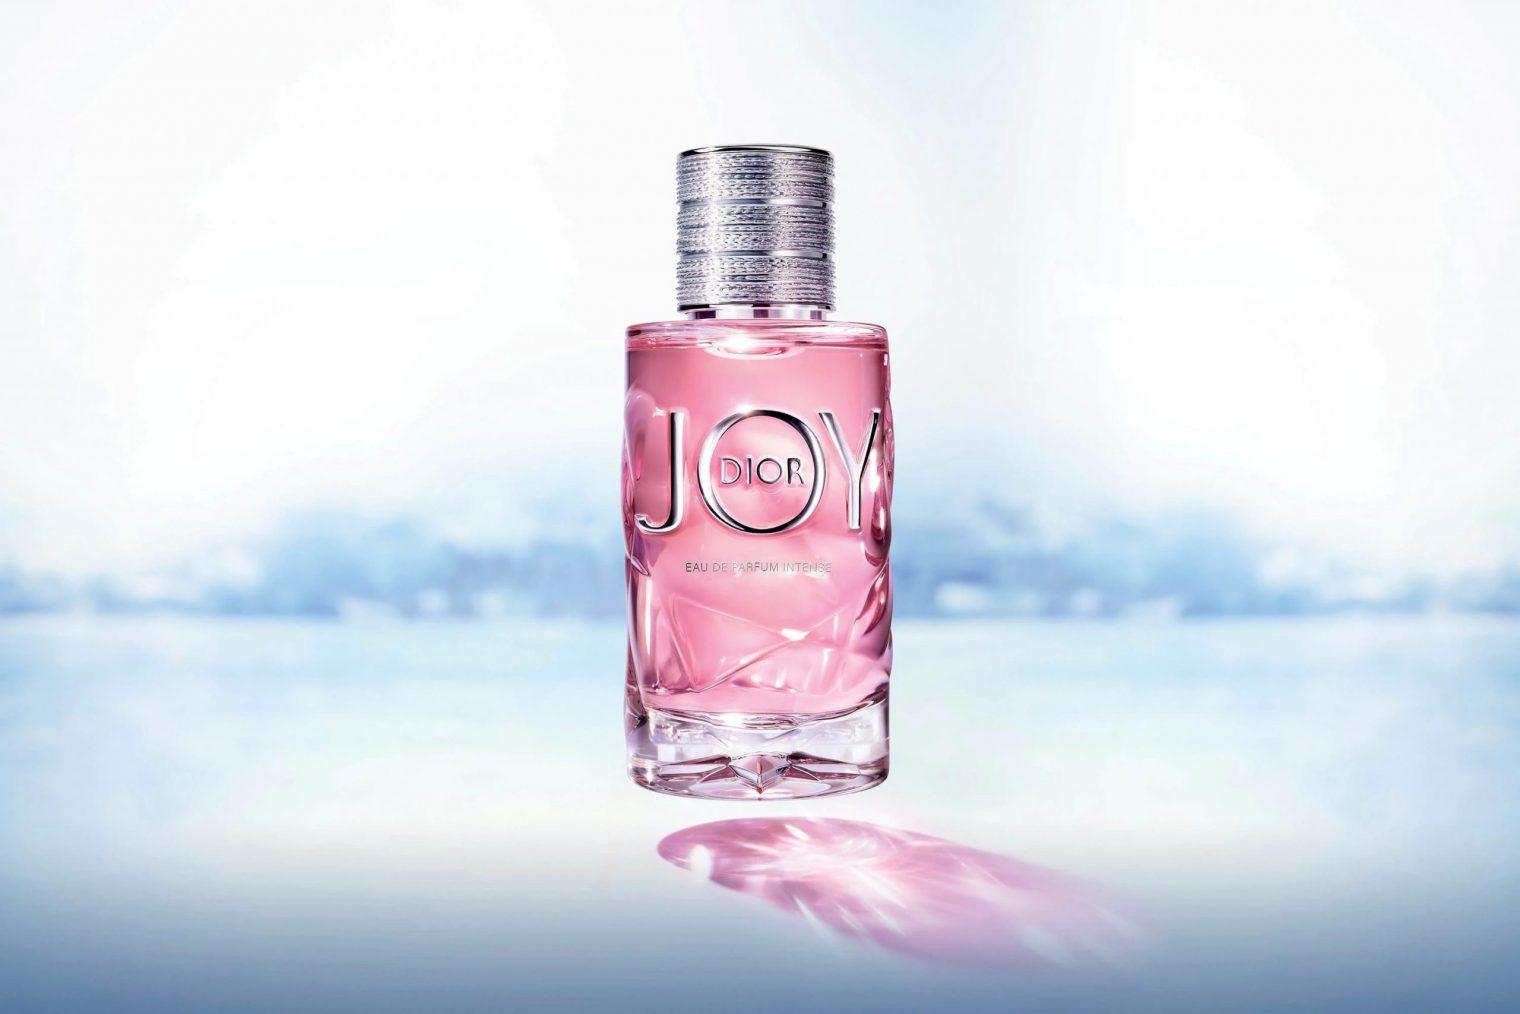 Review nước hoa Joy Dior 90ml chính hãng của Pháp